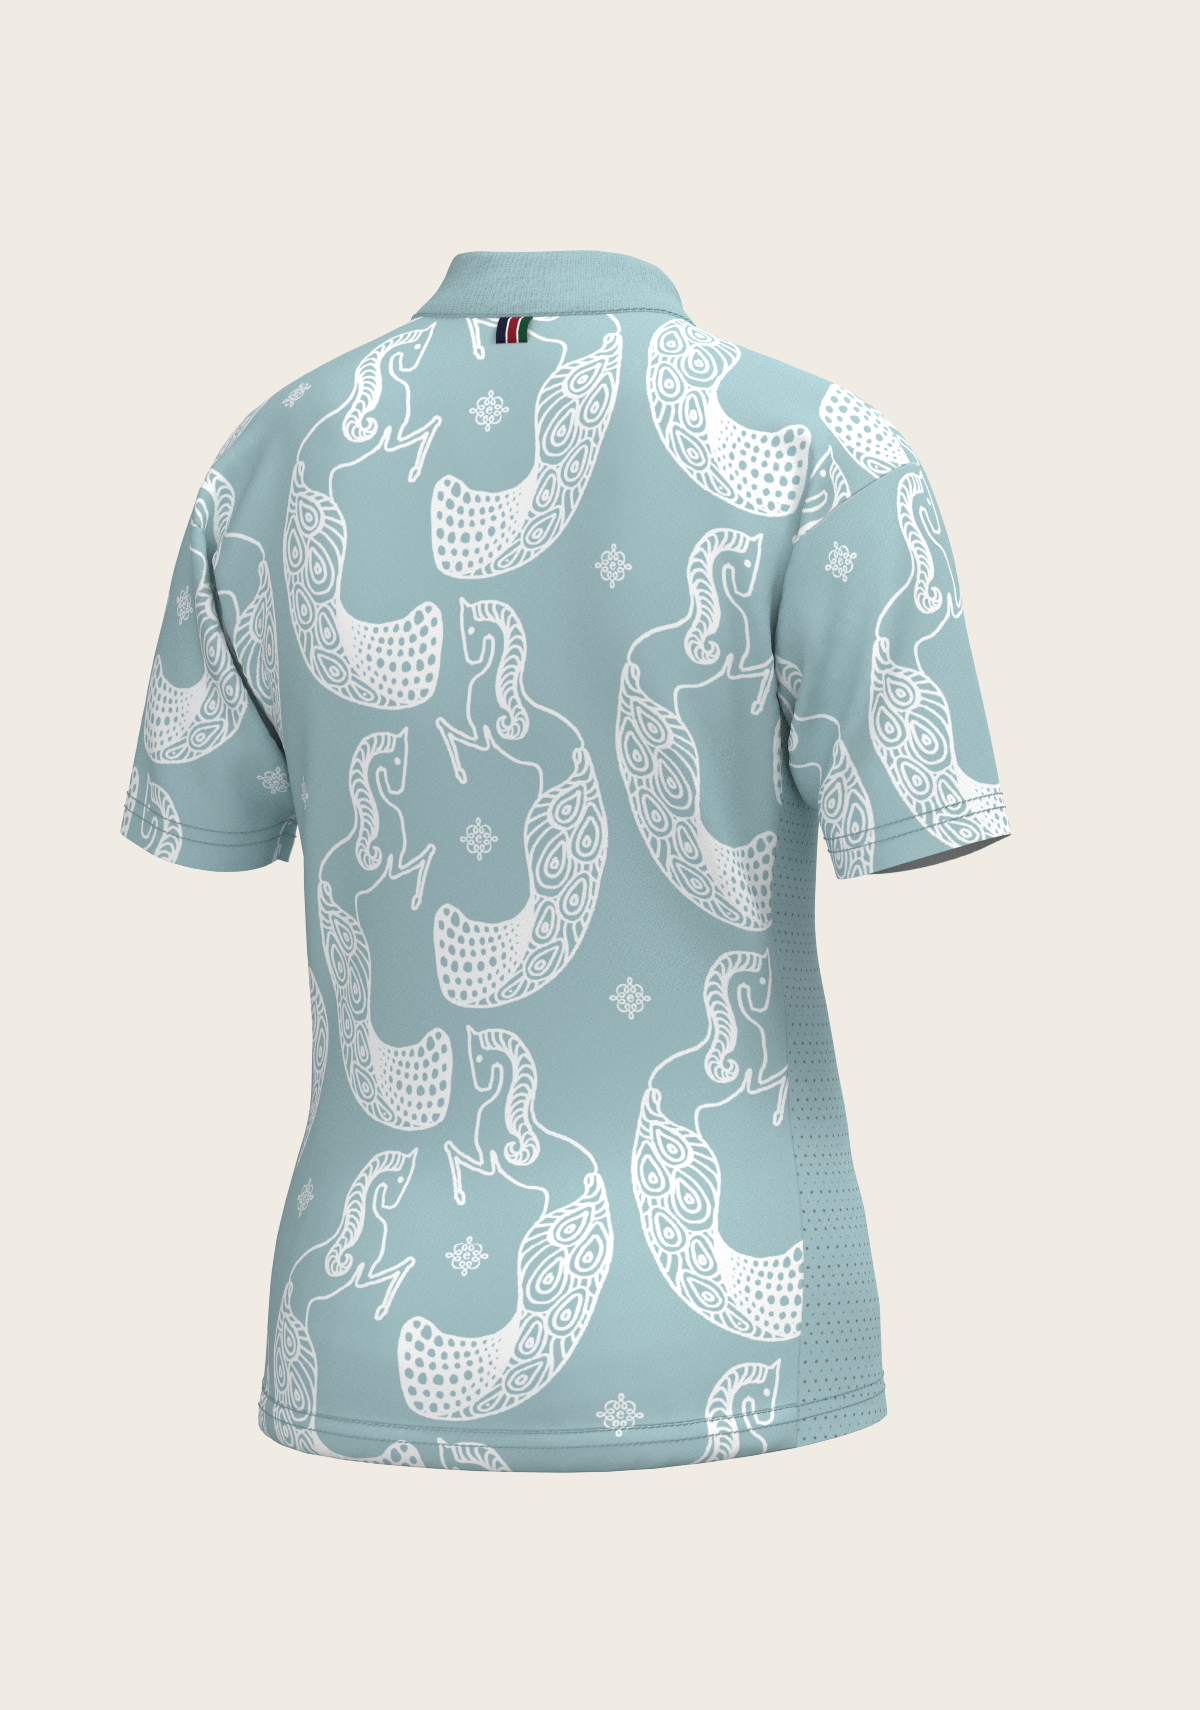 Mermaid Horses in Skye Blue Children's Short Sleeve Shirt